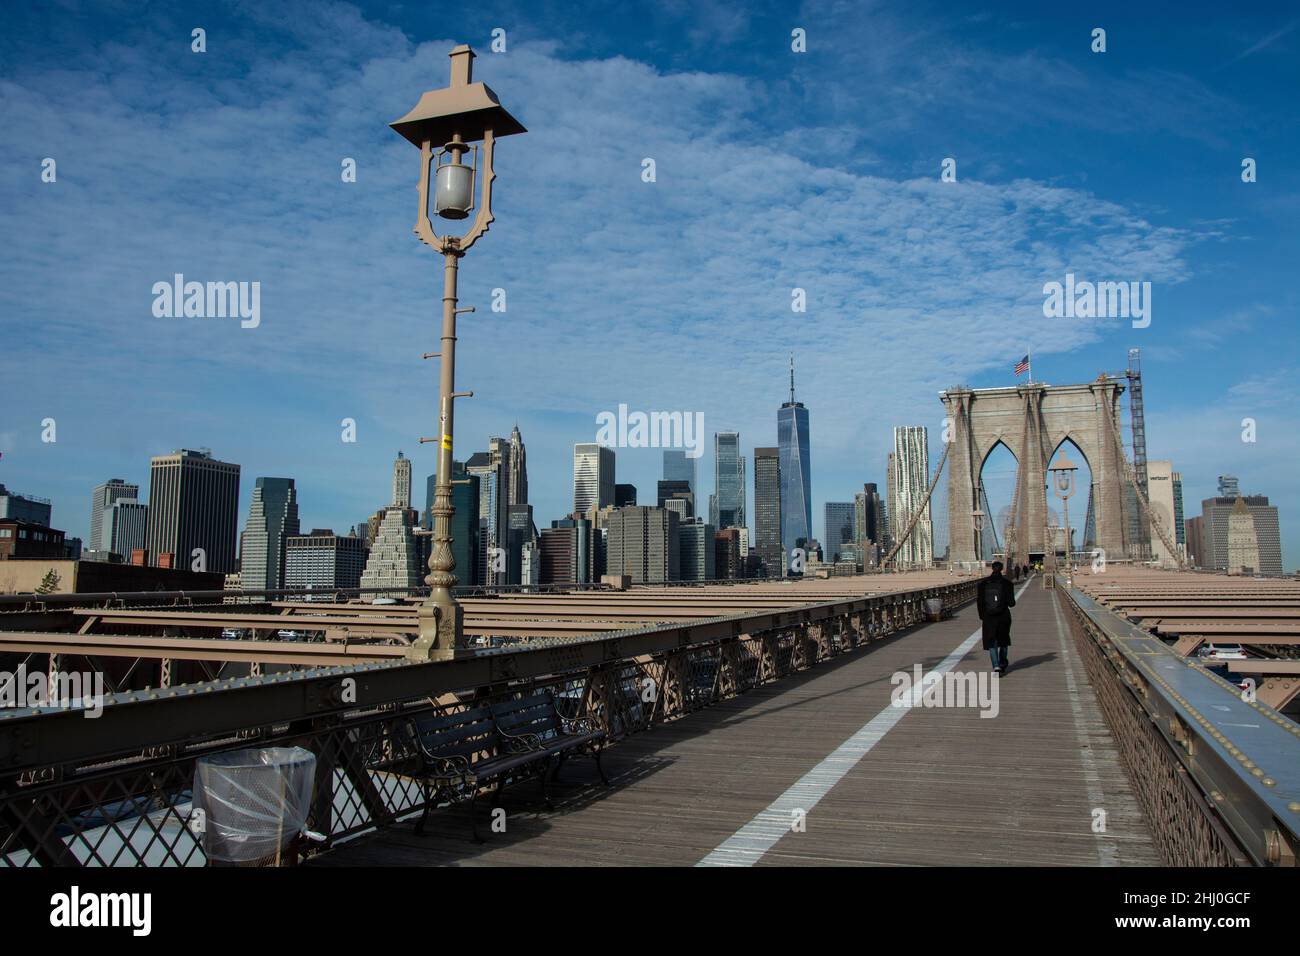 Spektakulärer Blick von der Brooklyn Bridge auf die Skyline von Manhattan Foto Stock